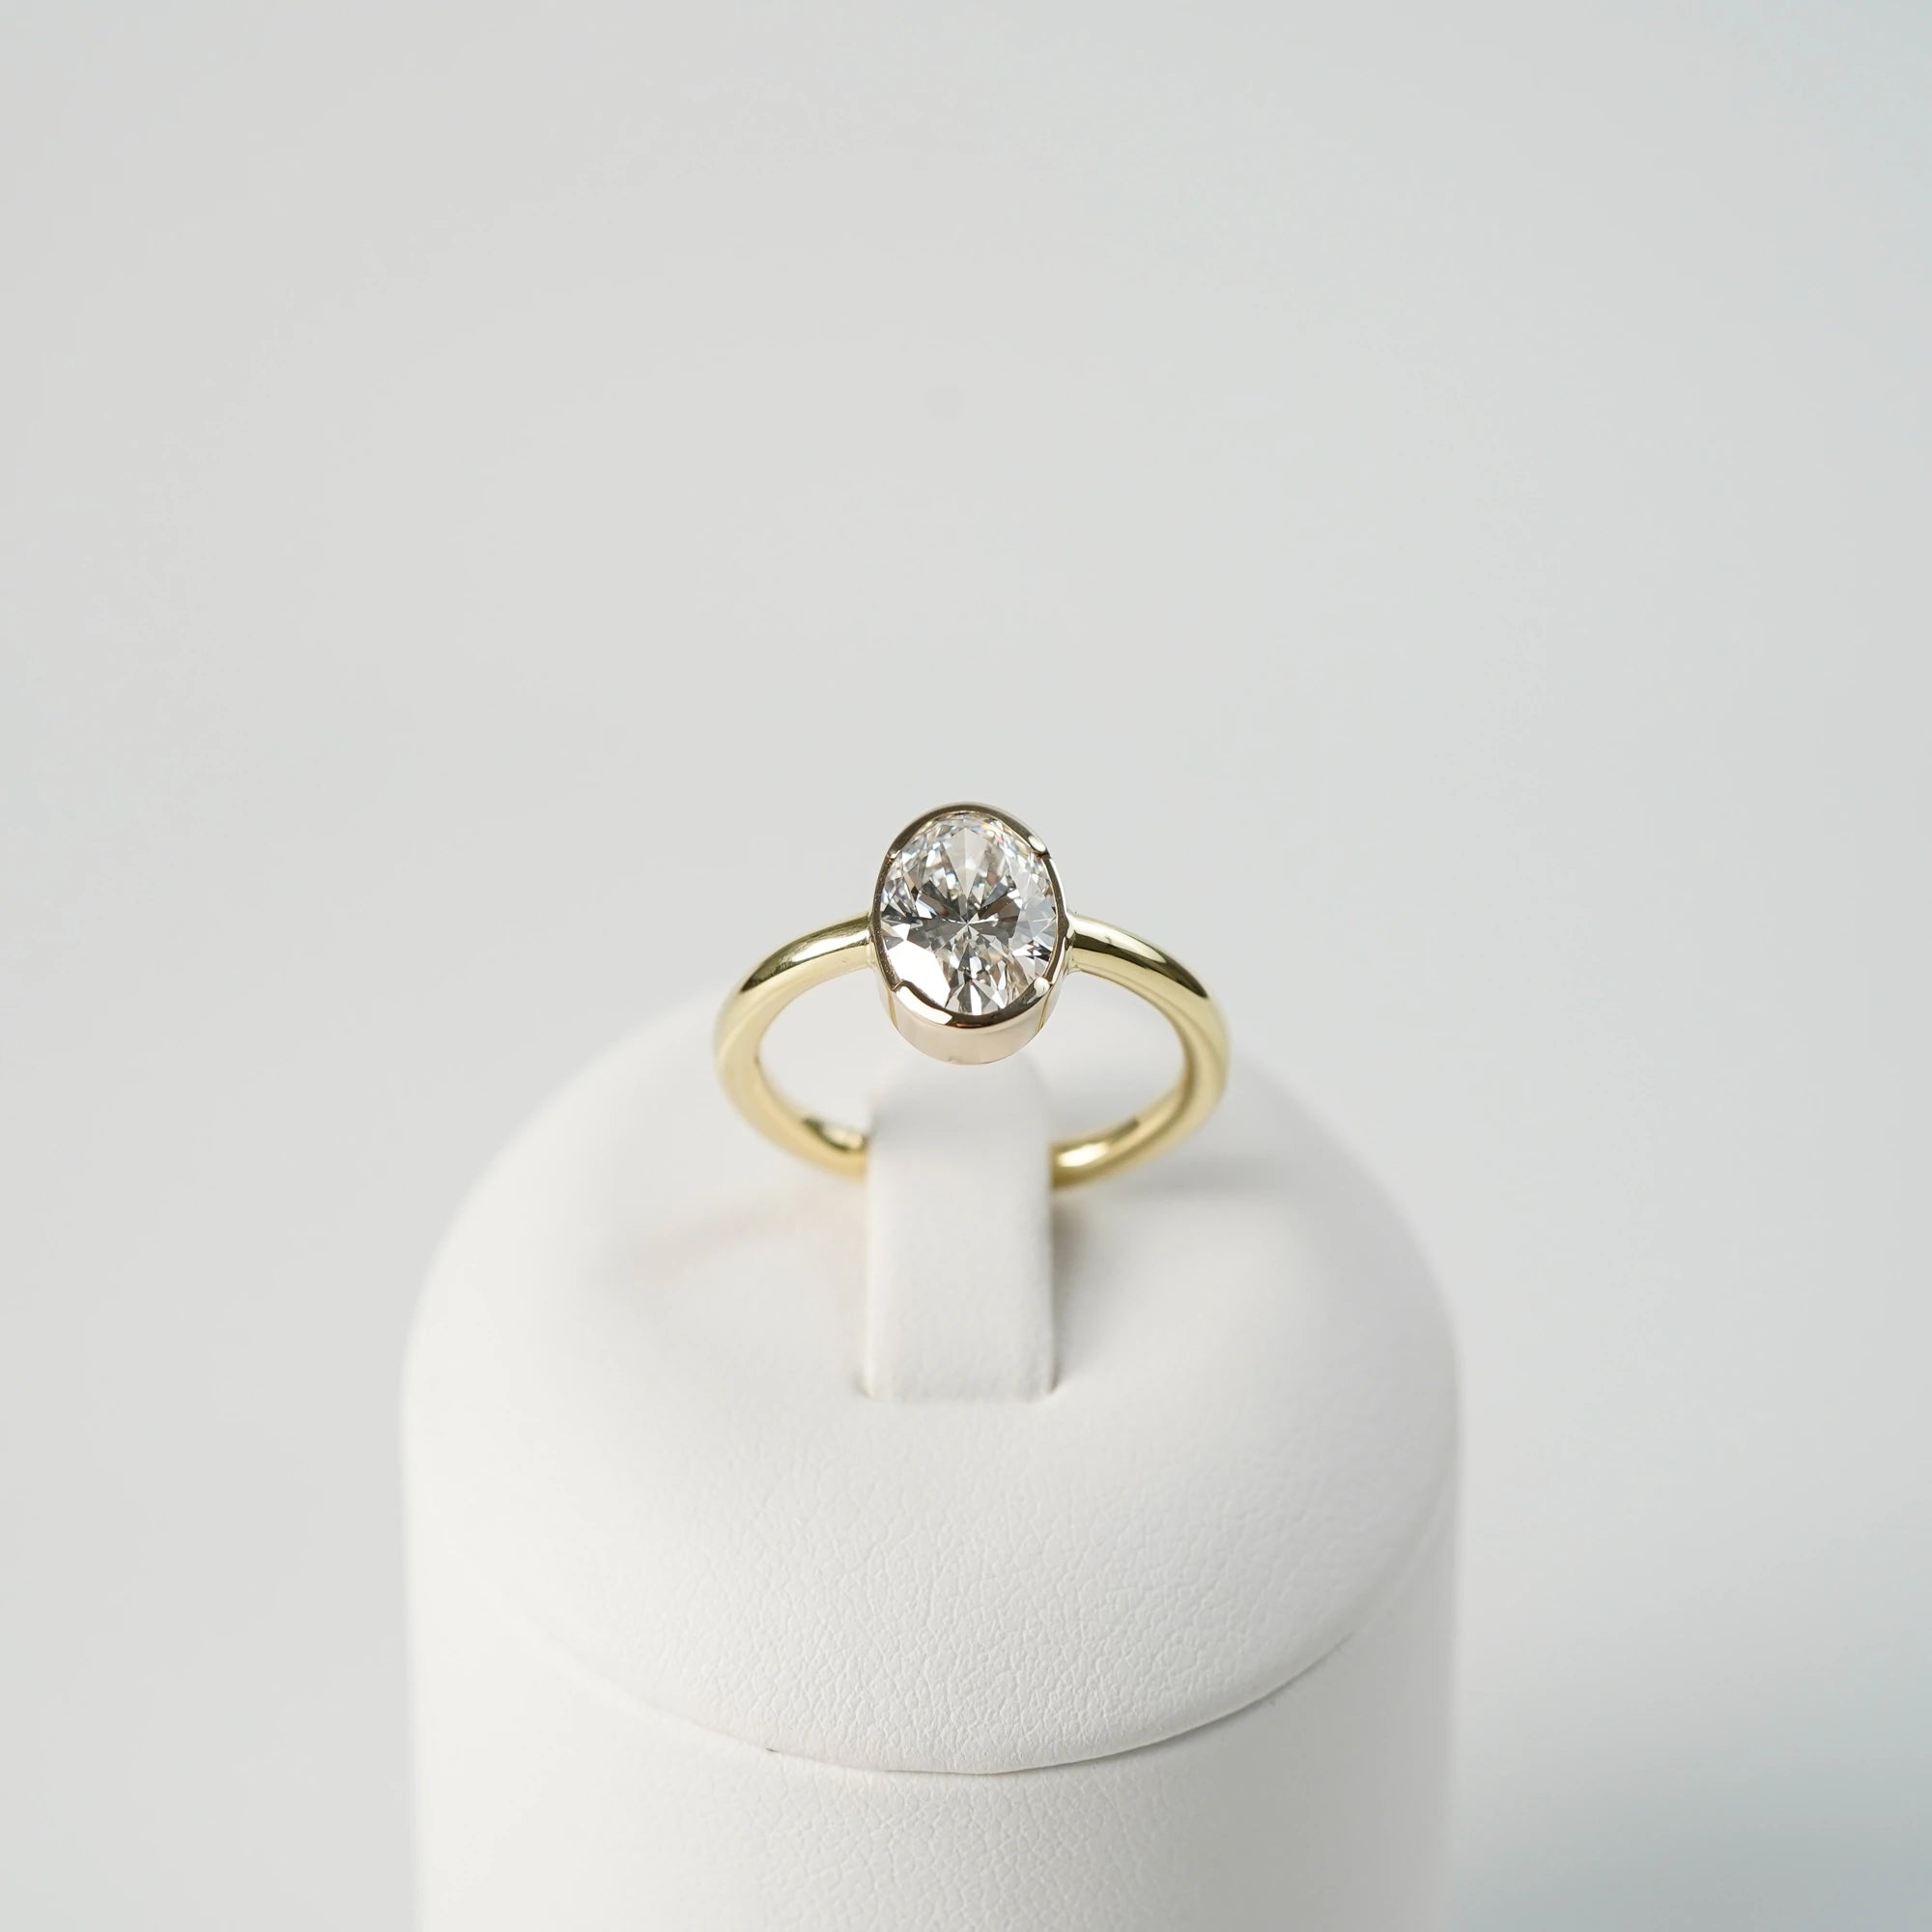 Produktfoto des in Gelbgold gefertigten Verlobungsring "Gleaming Love" mit einem großen Labor-Diamanten mit 2.03ct, während der Ring auf einem Ringständer steckt (frontaler Blickwinkel)